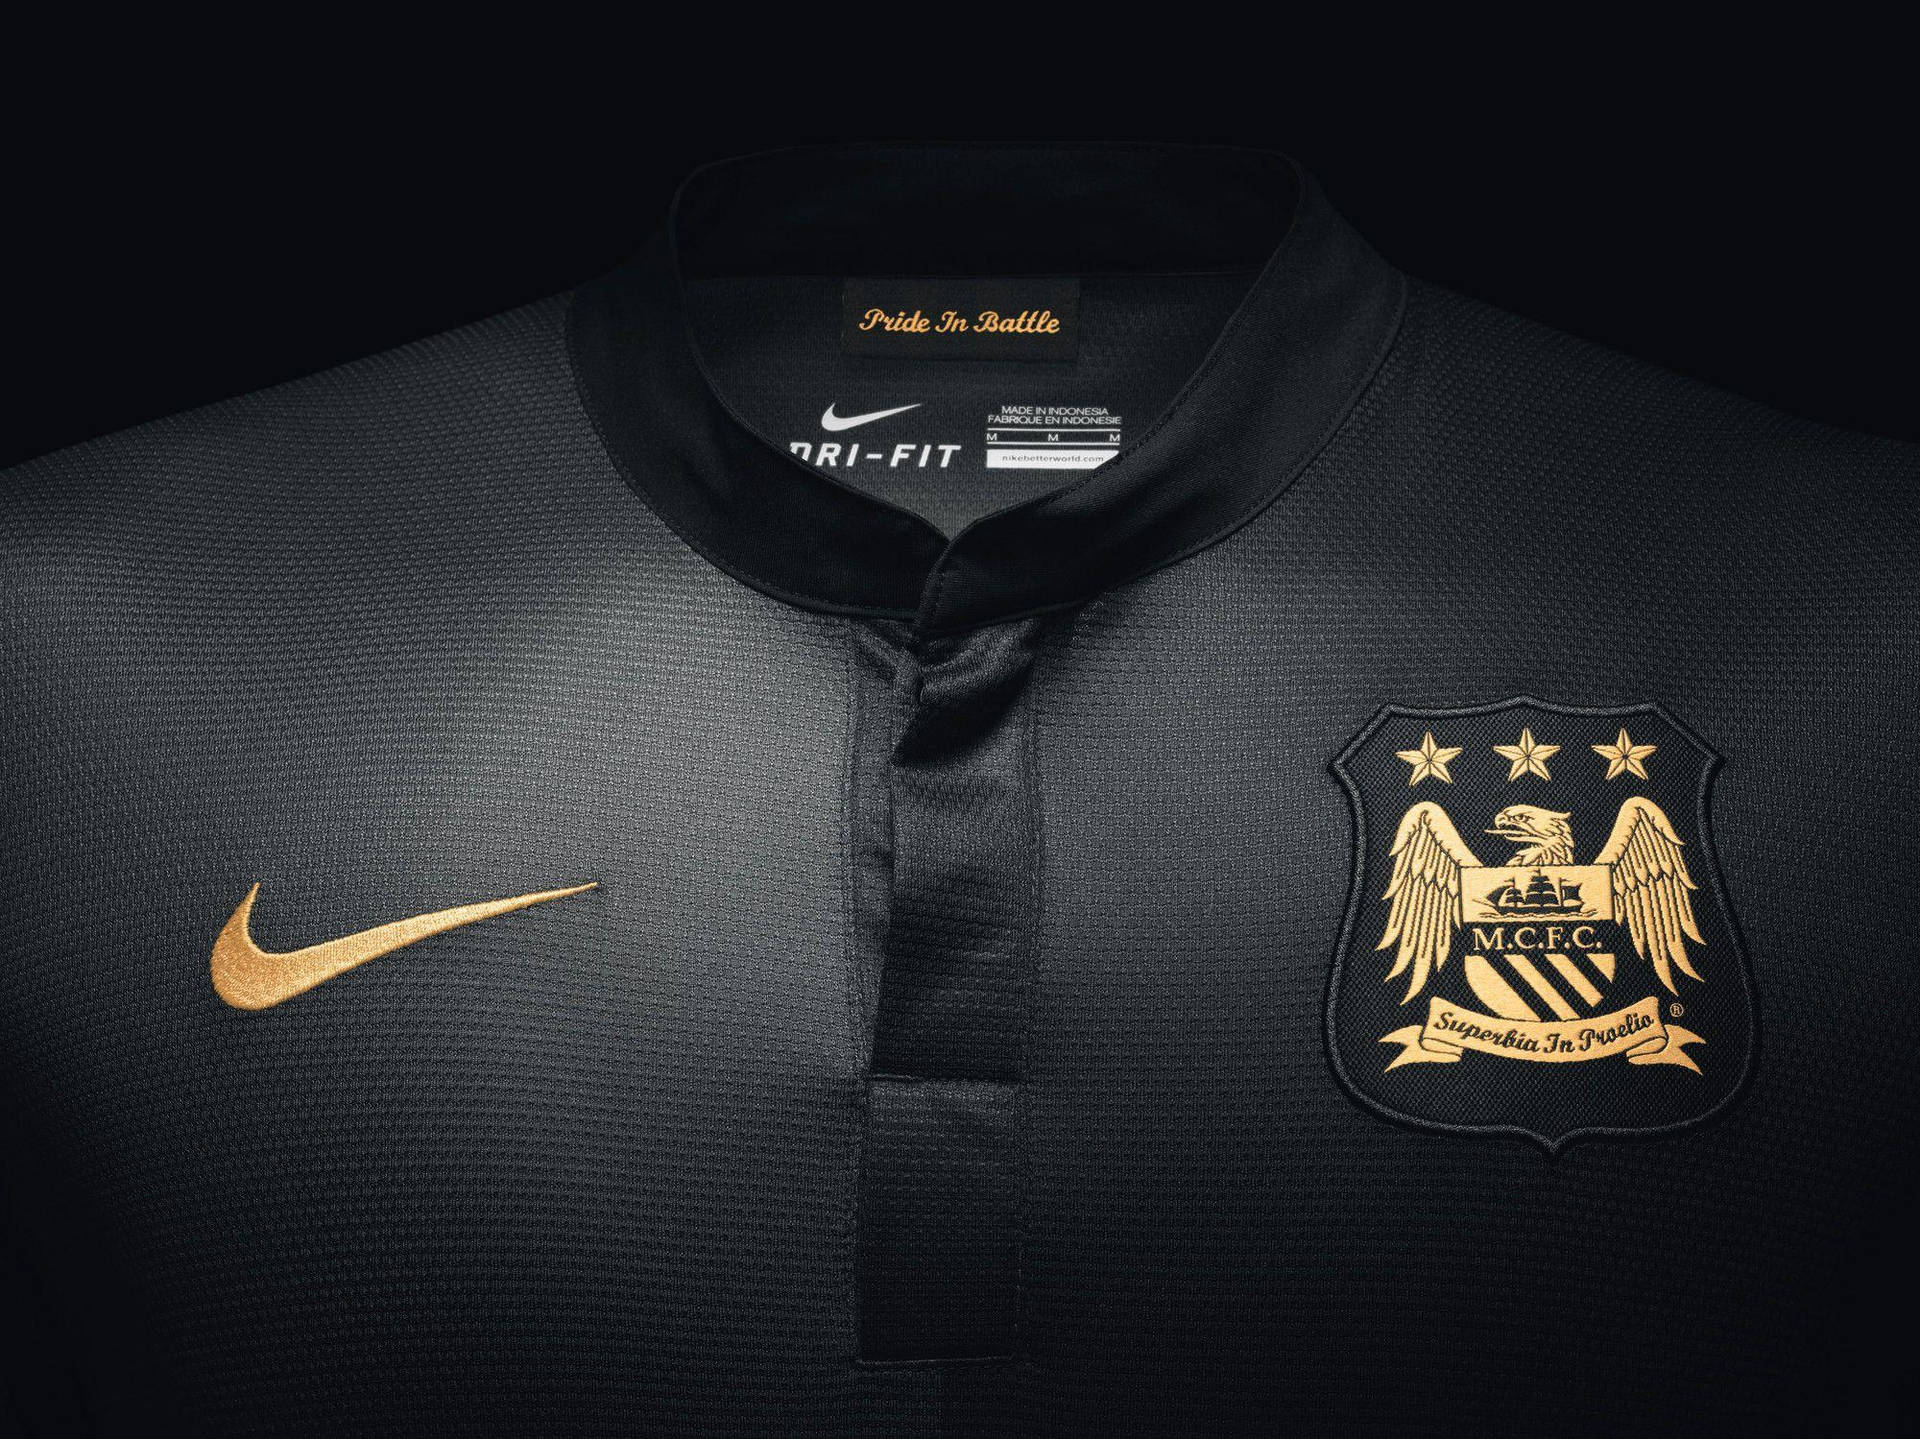 Camisetanegra Con El Logotipo Del Manchester City Fc. Fondo de pantalla